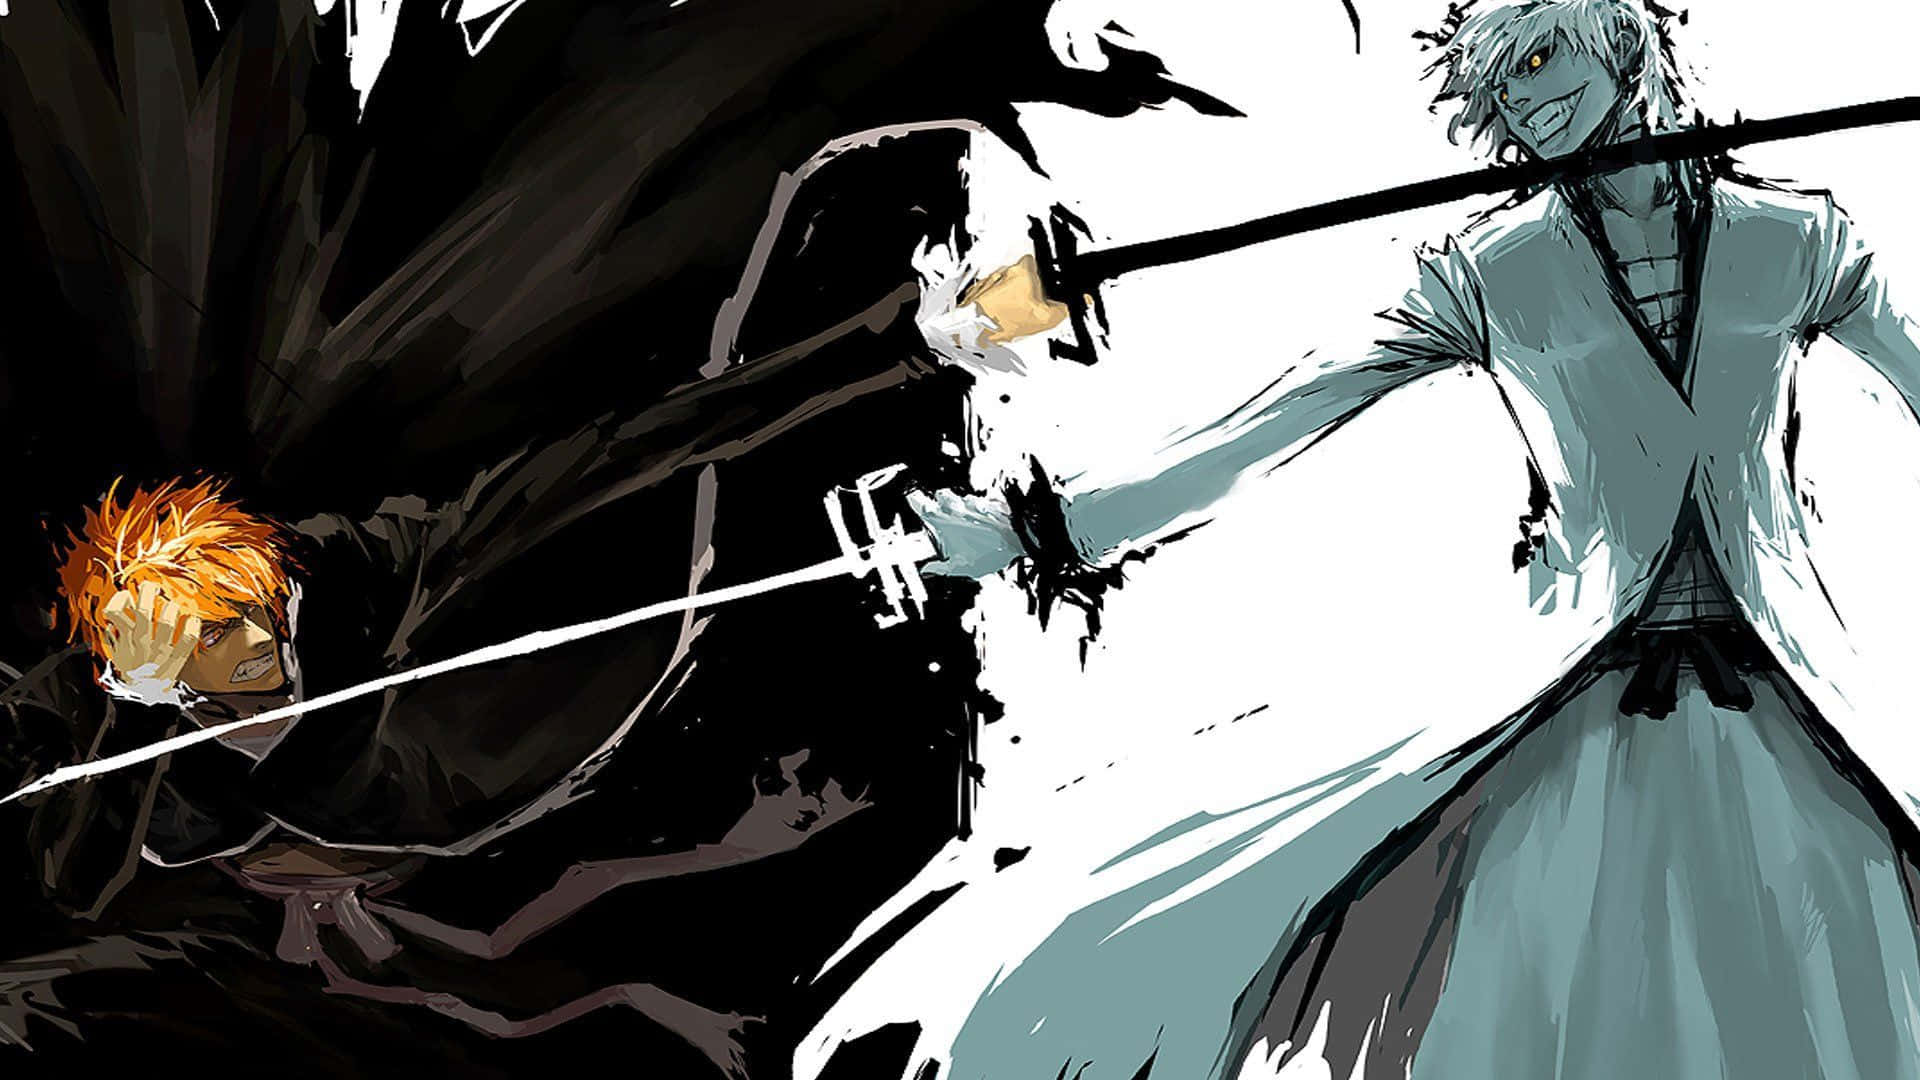 Ichigo and Rukia battle against a Hollow.